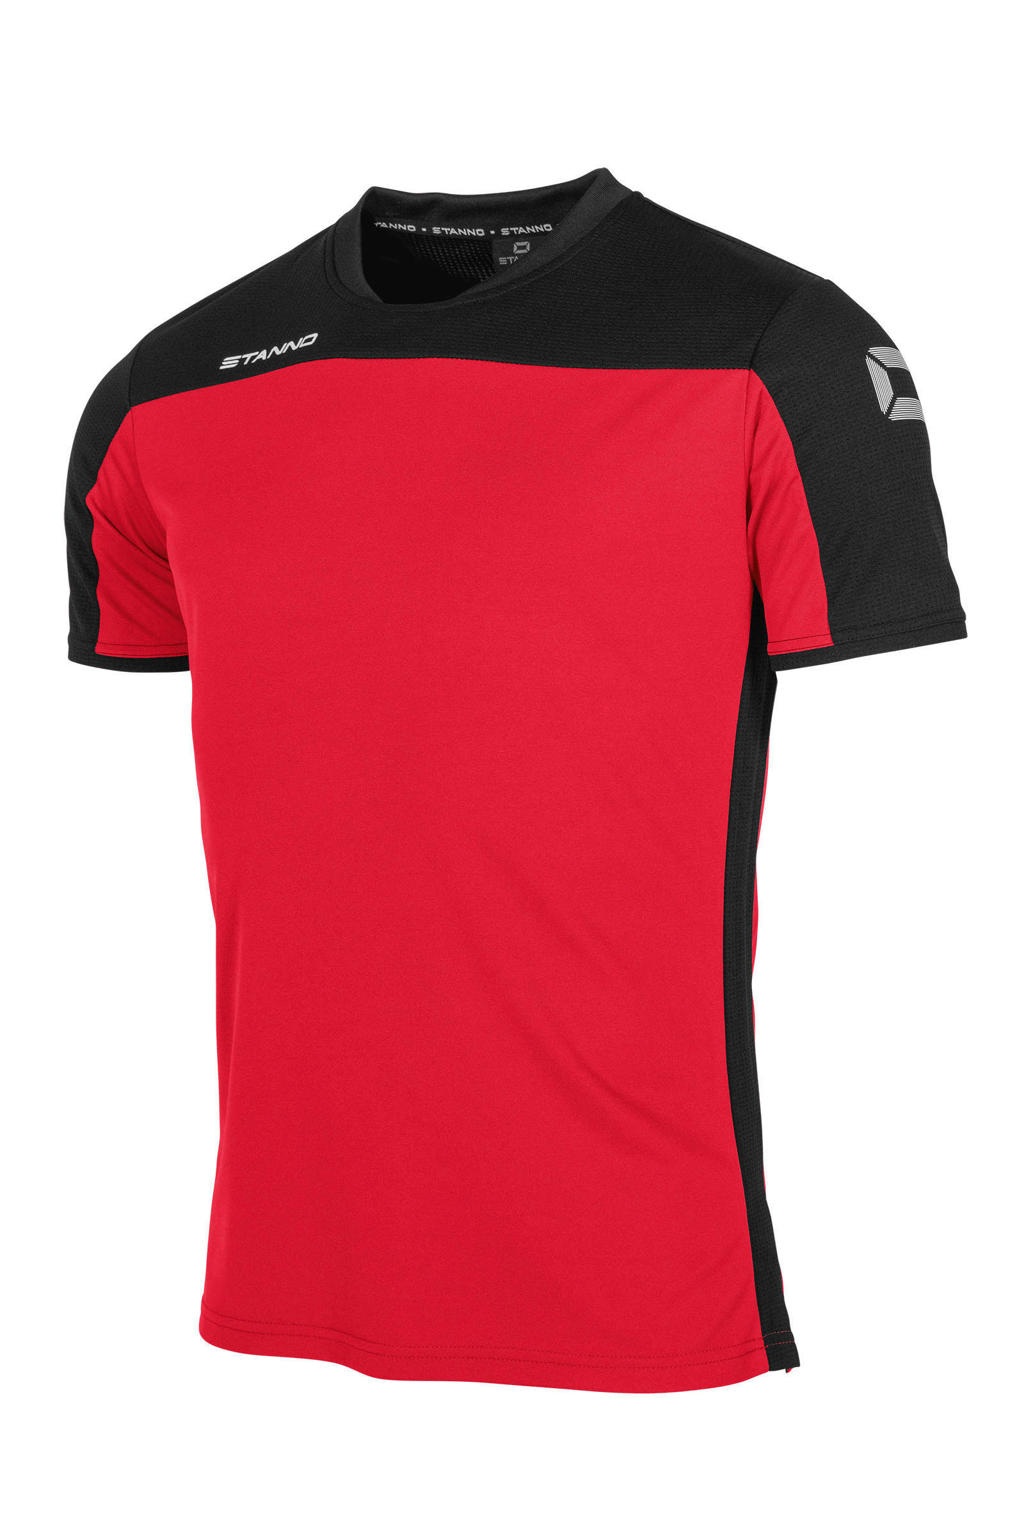 Rood en zwarte heren Stanno voetbalshirt van polyester met korte mouwen, ronde hals en mesh